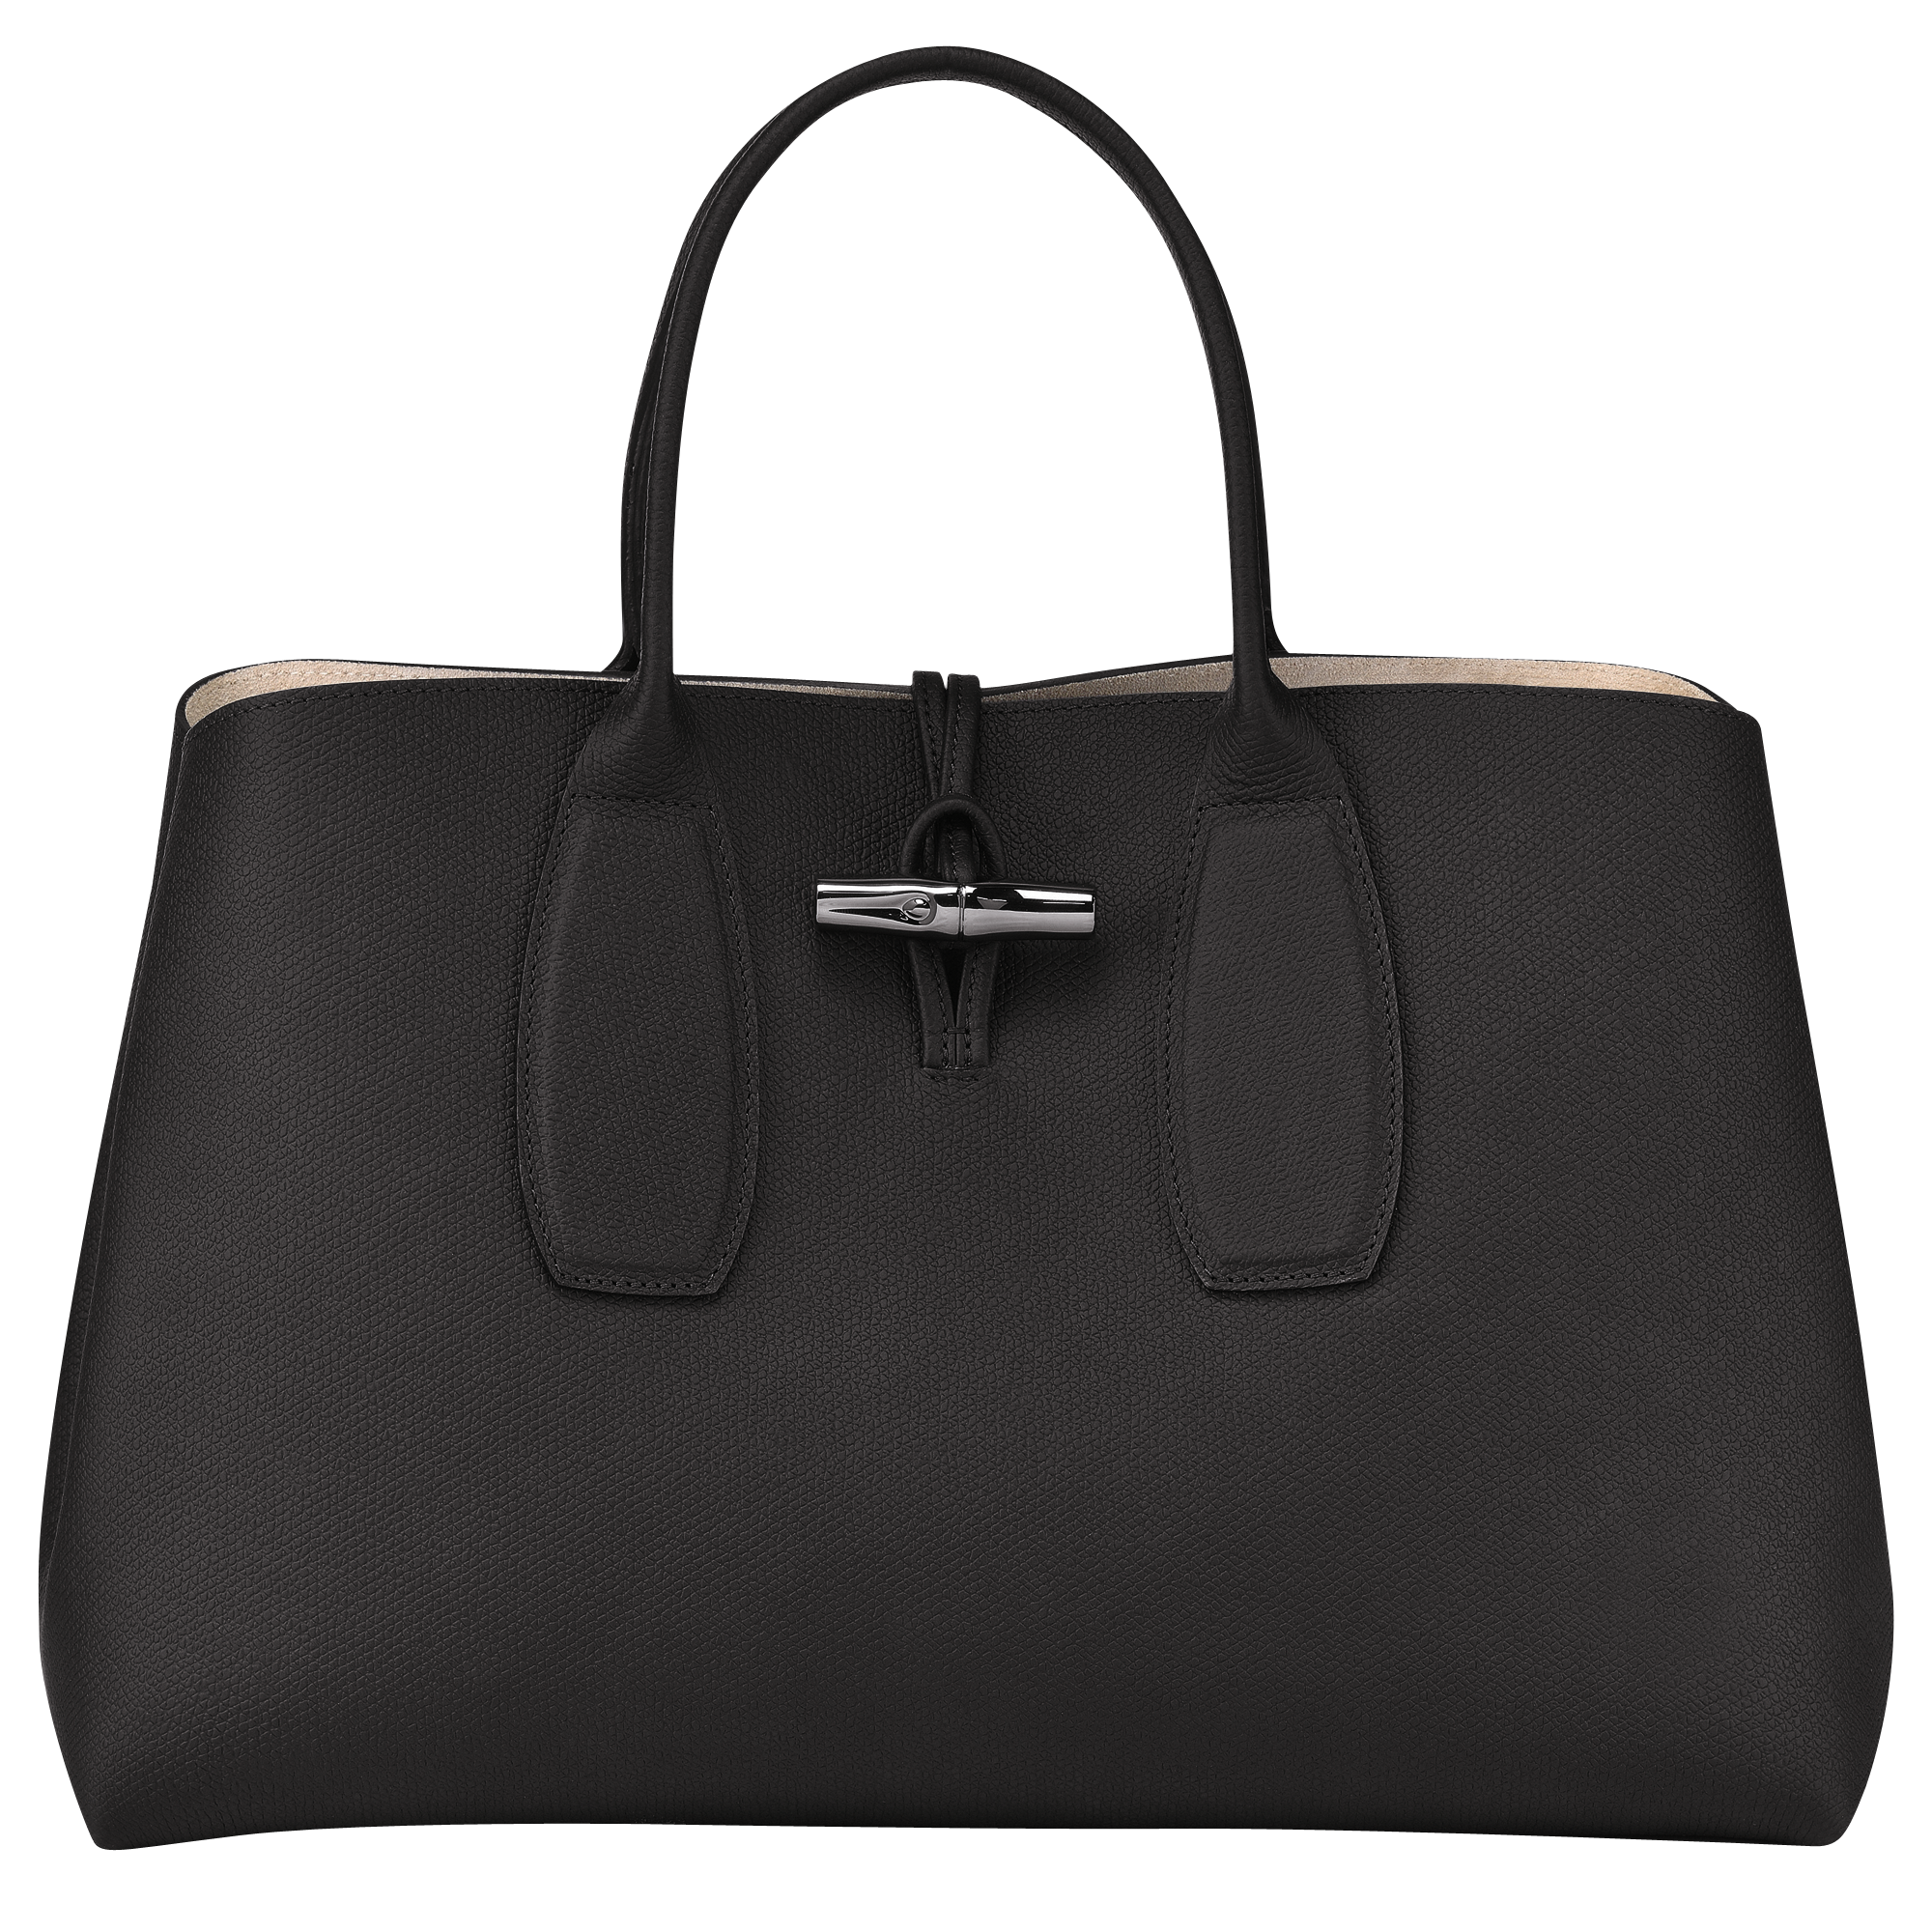 40代女性におすすめな人気の通勤バッグは、LONGCHAMPのロゾ XL トップハンドルバッグ